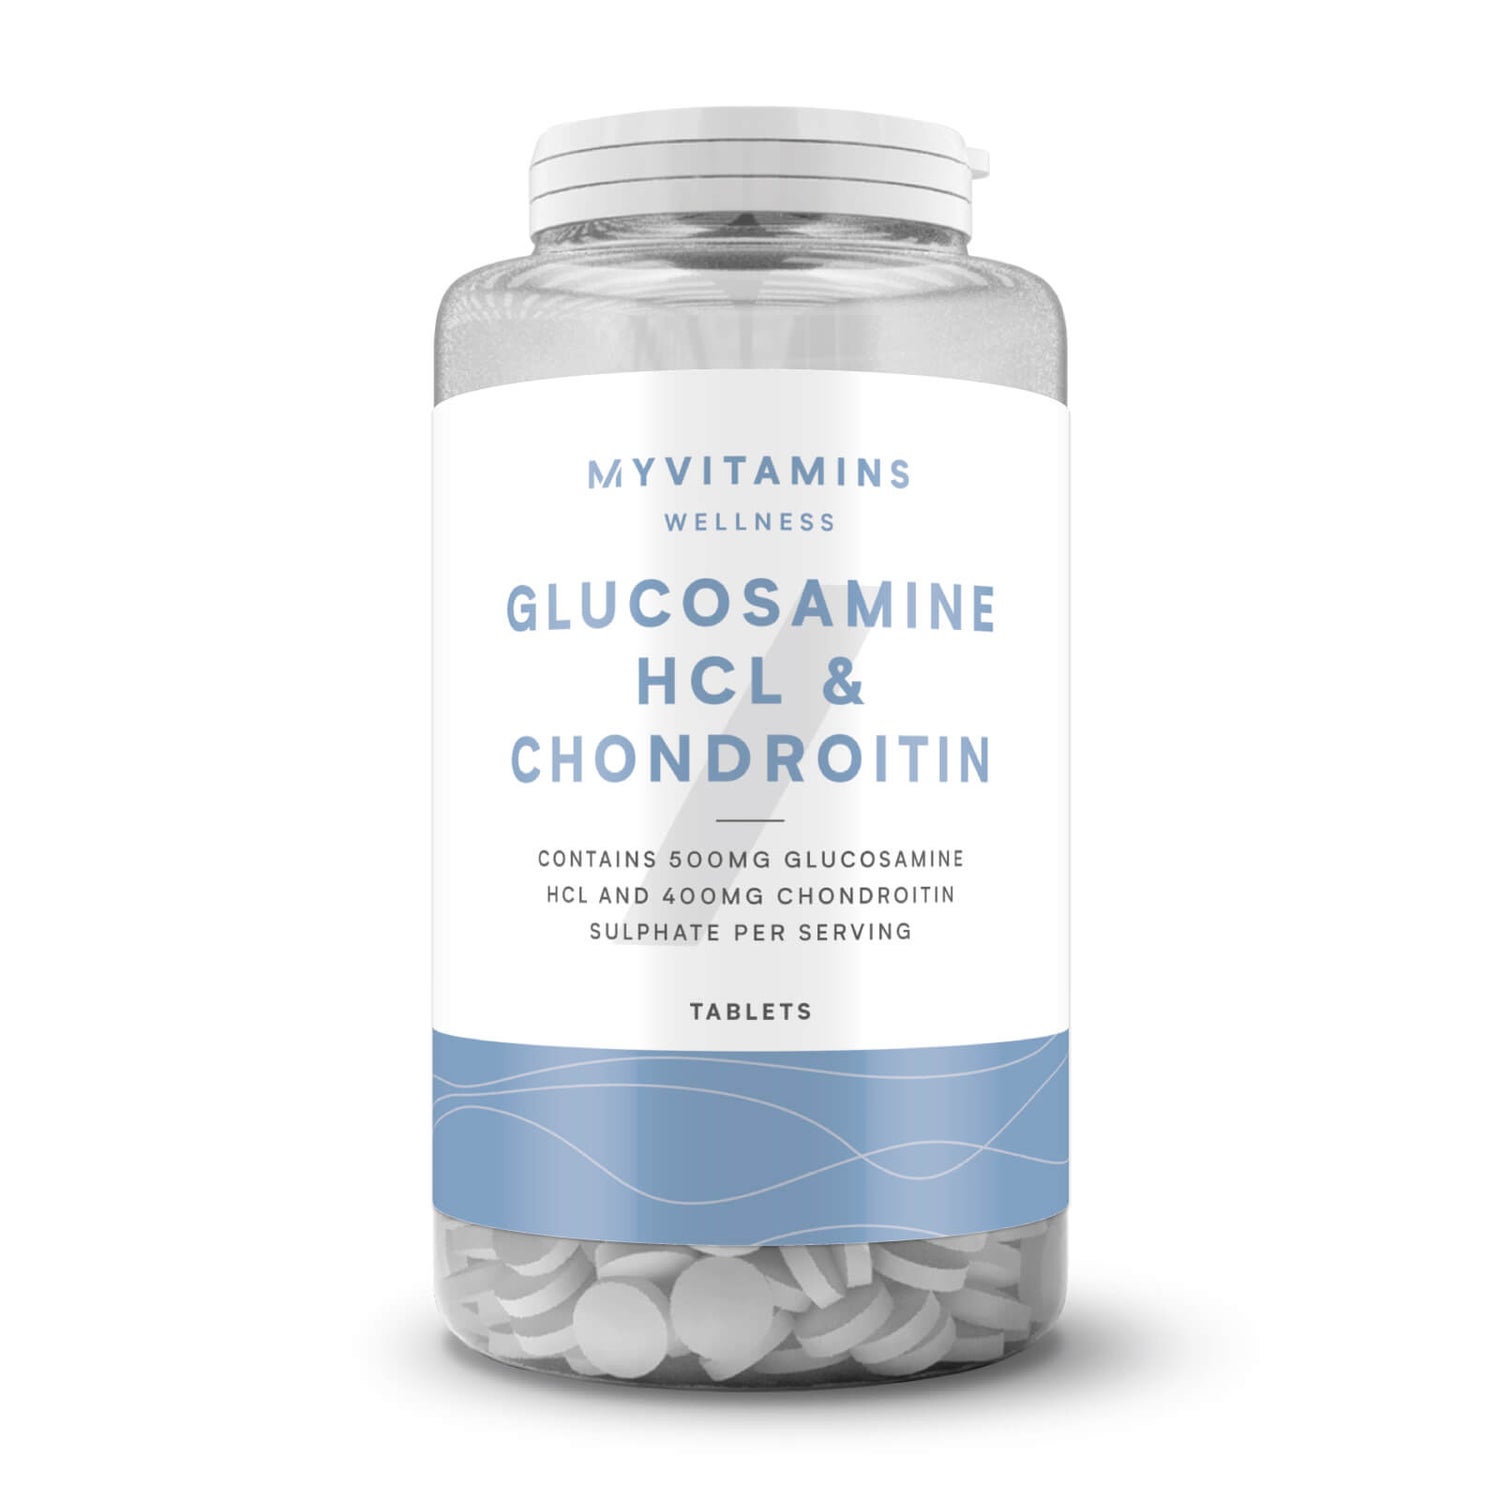 visa informacija apie gliukozamino chondroitino skauda jungtinio kaulus padaryti